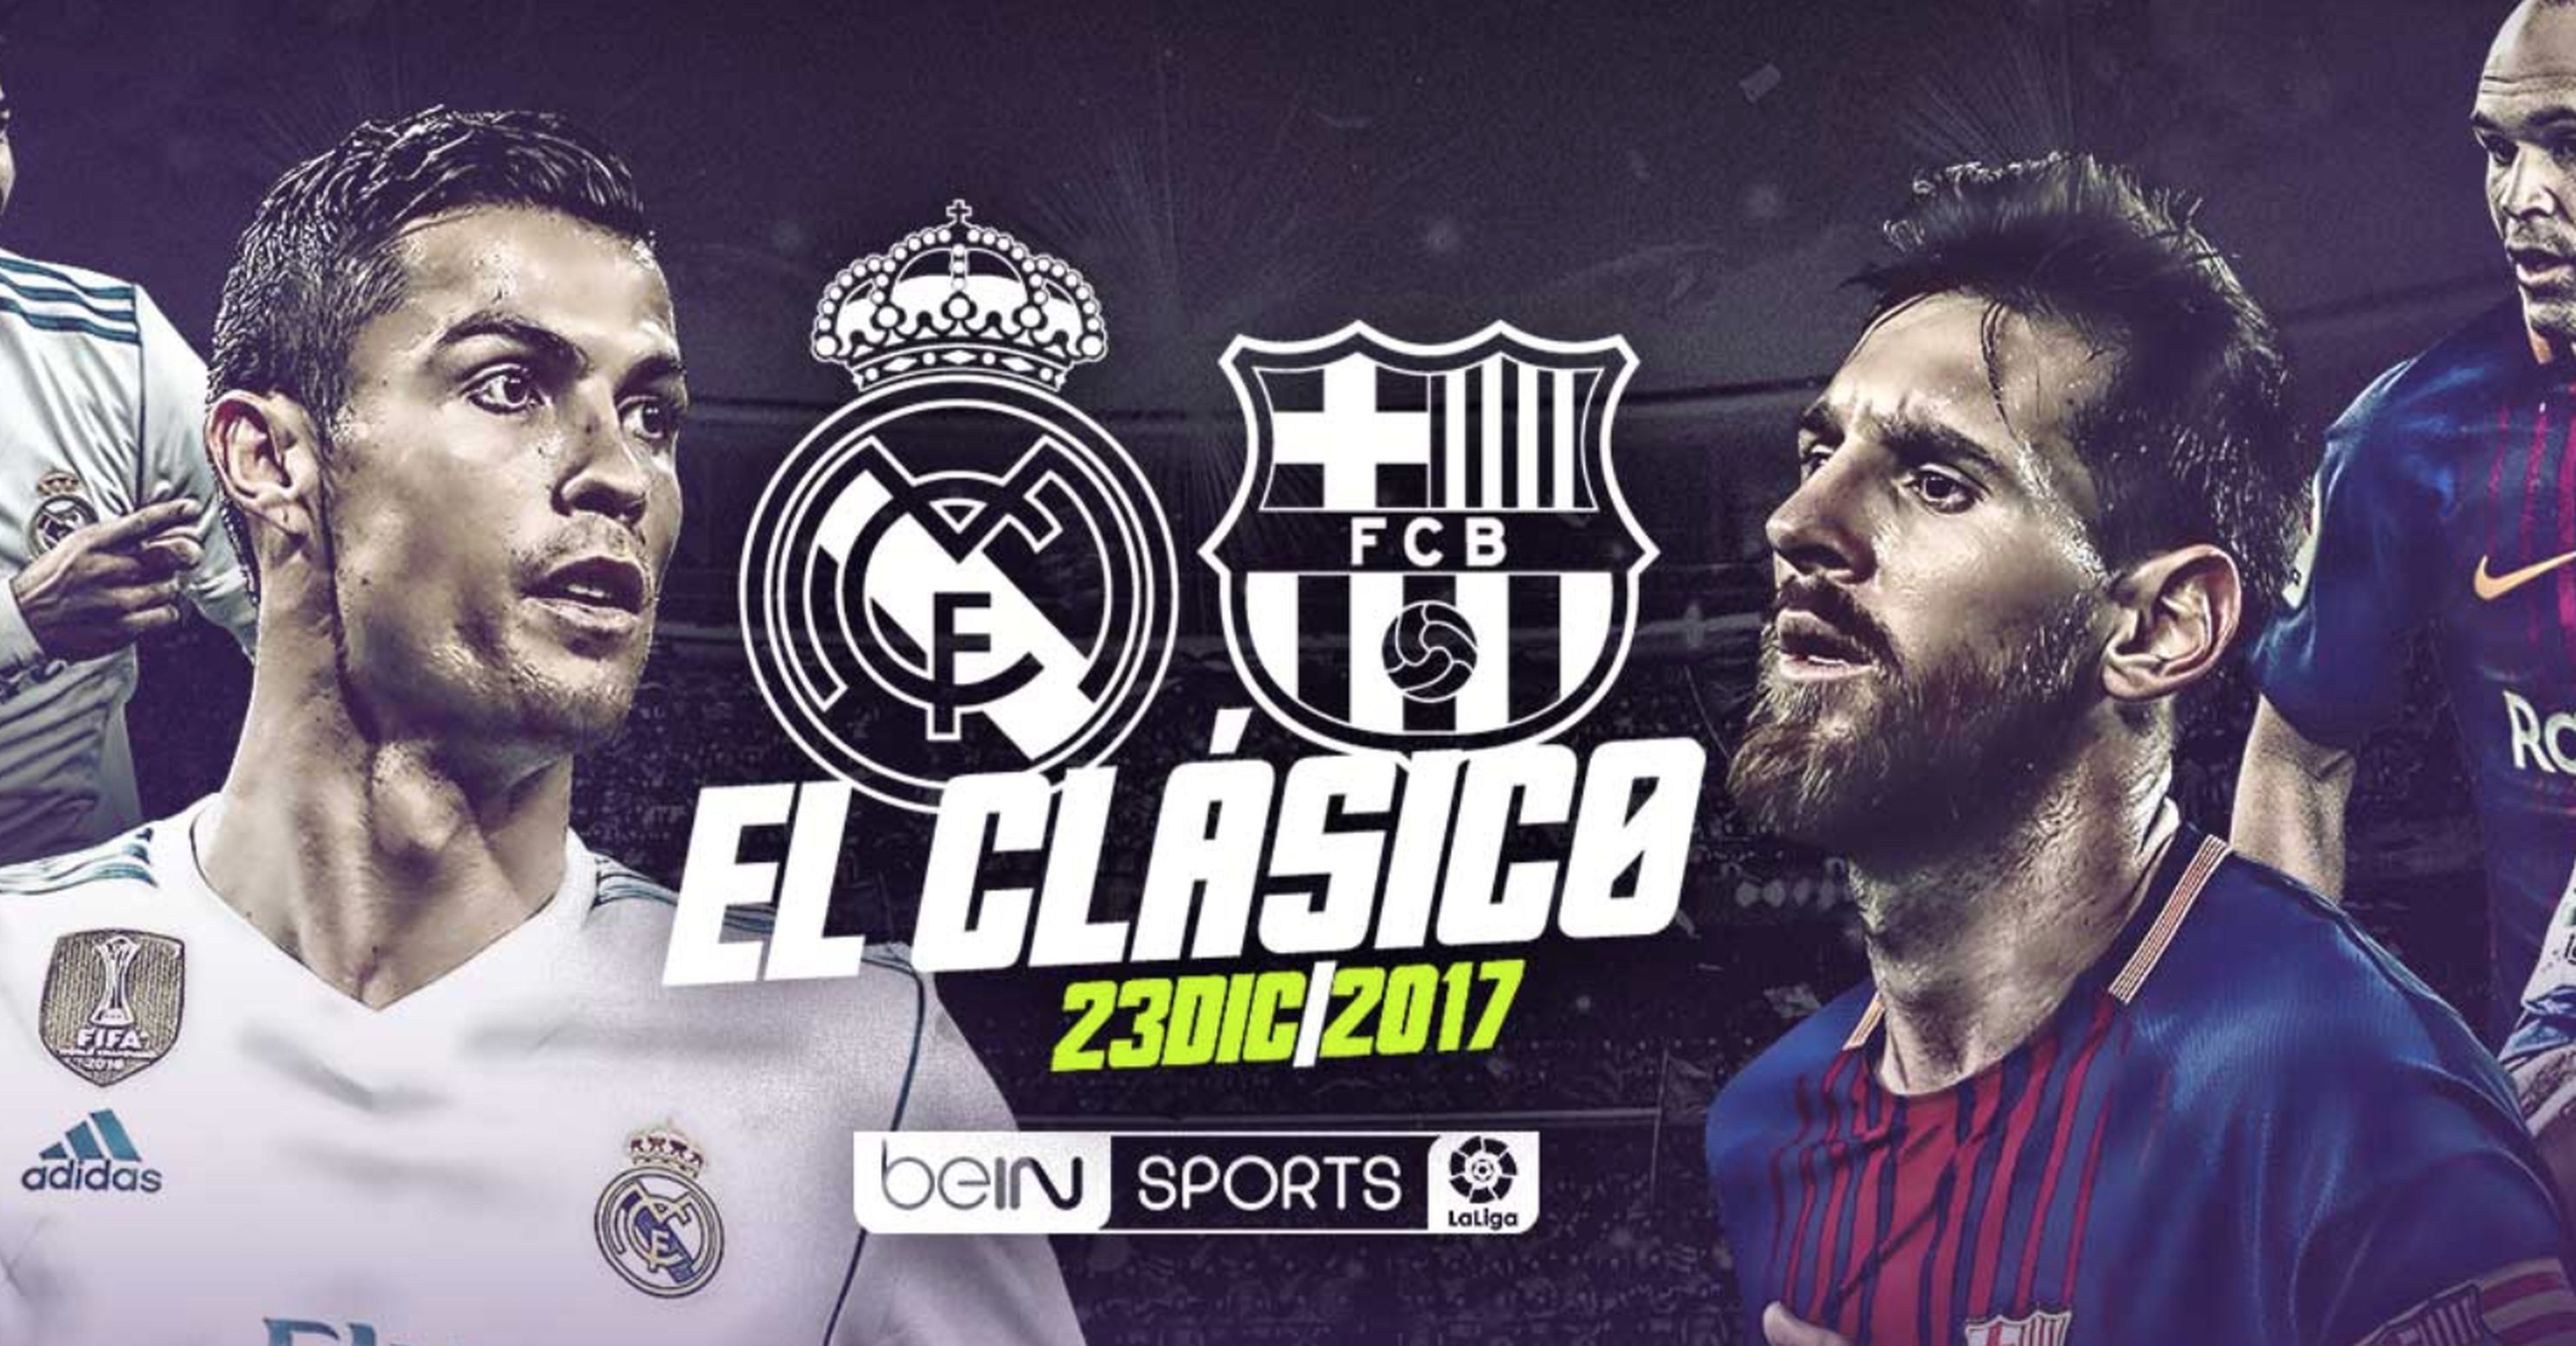 El clásico Real Madrid Barcelona del 23 de diciembre en directo por Internet